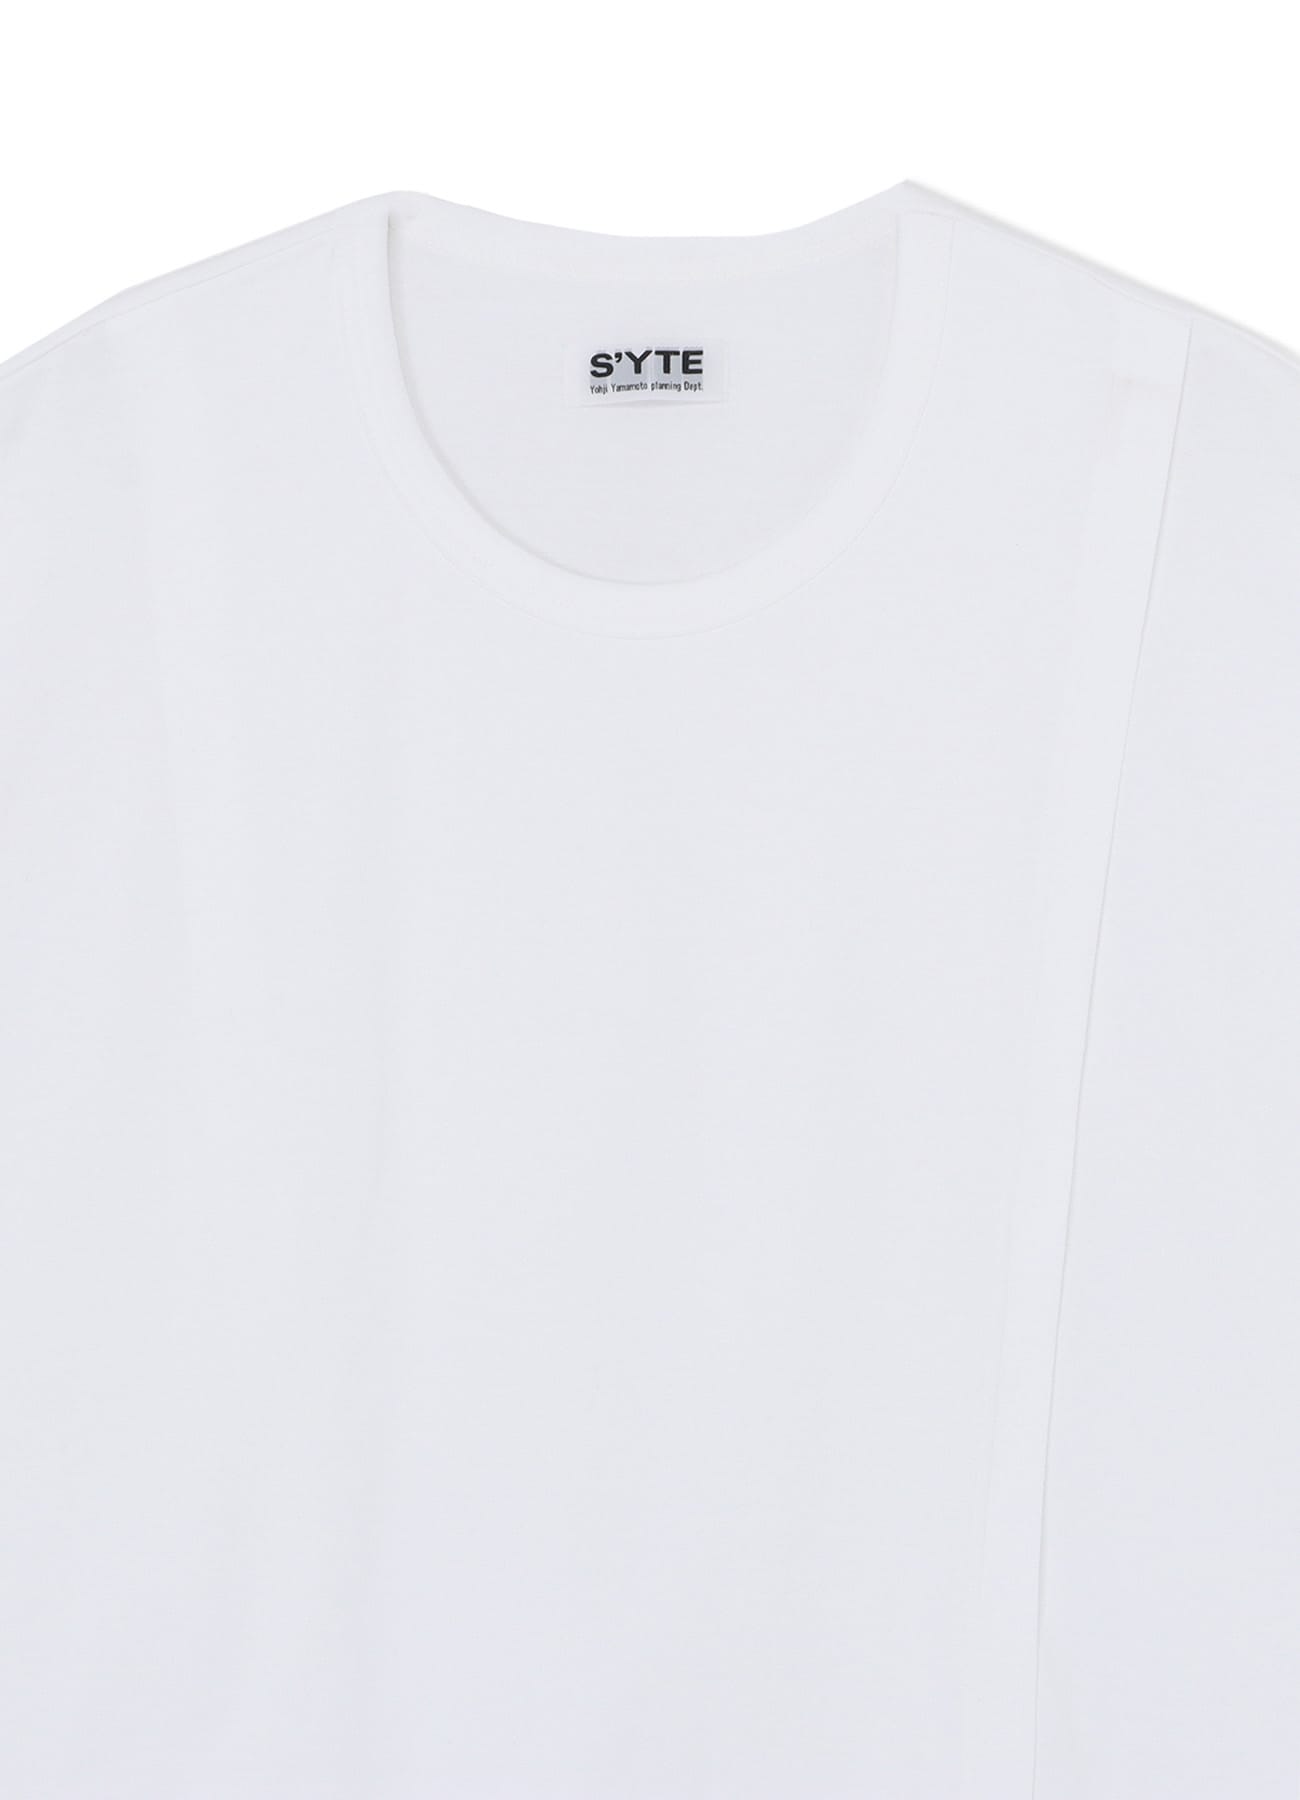 S'YTE COTTON LAYERED T-SHIRT ヨウジヤマモト Ｍサイト - Tシャツ 